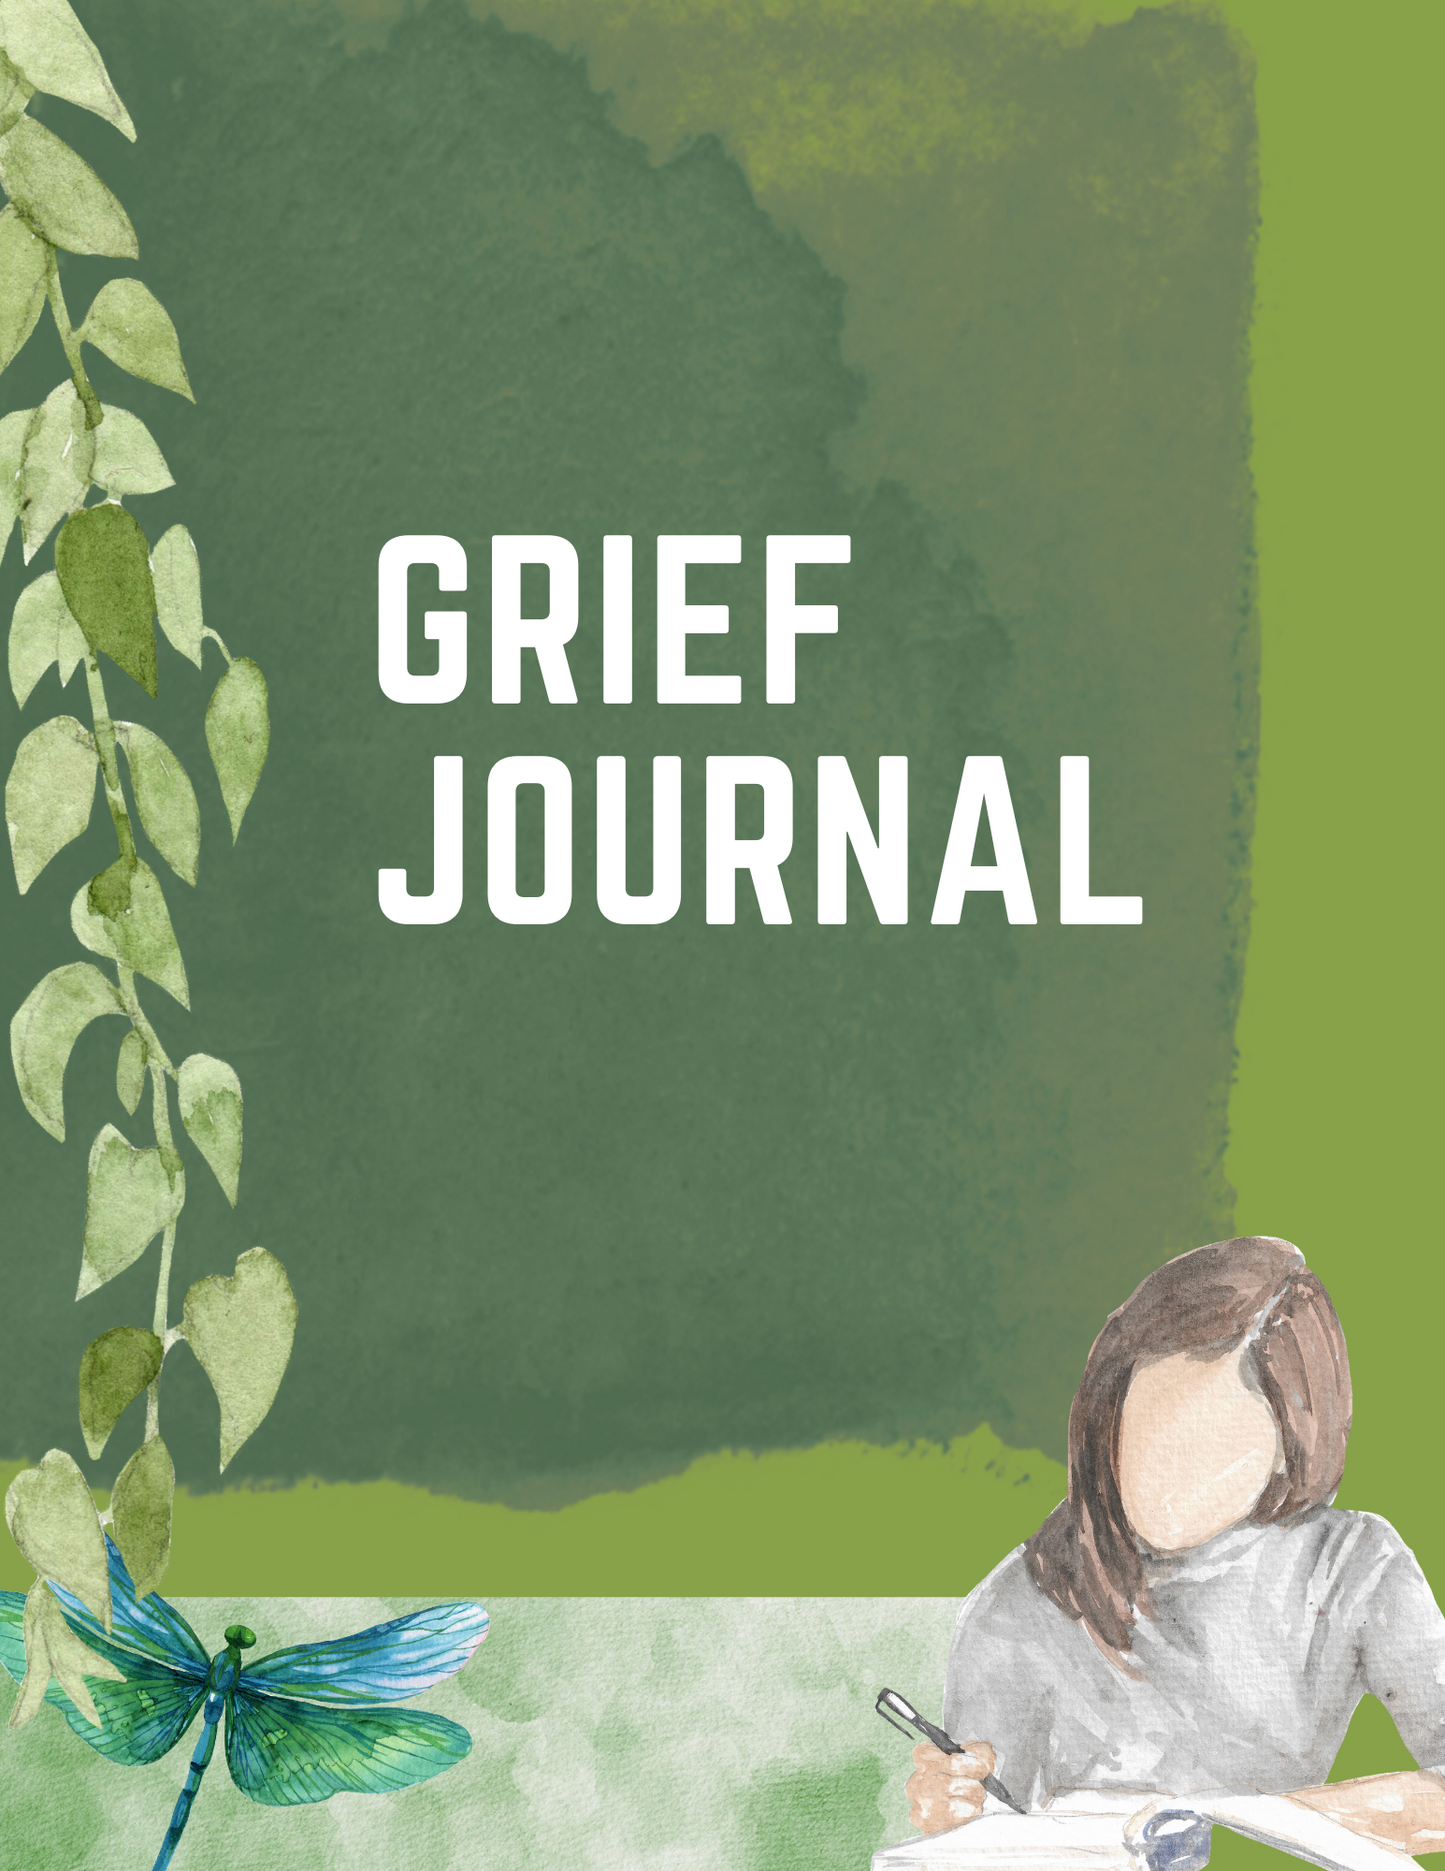 Empower Yourself Through Grief Online Seminar (includes digital grief journal)